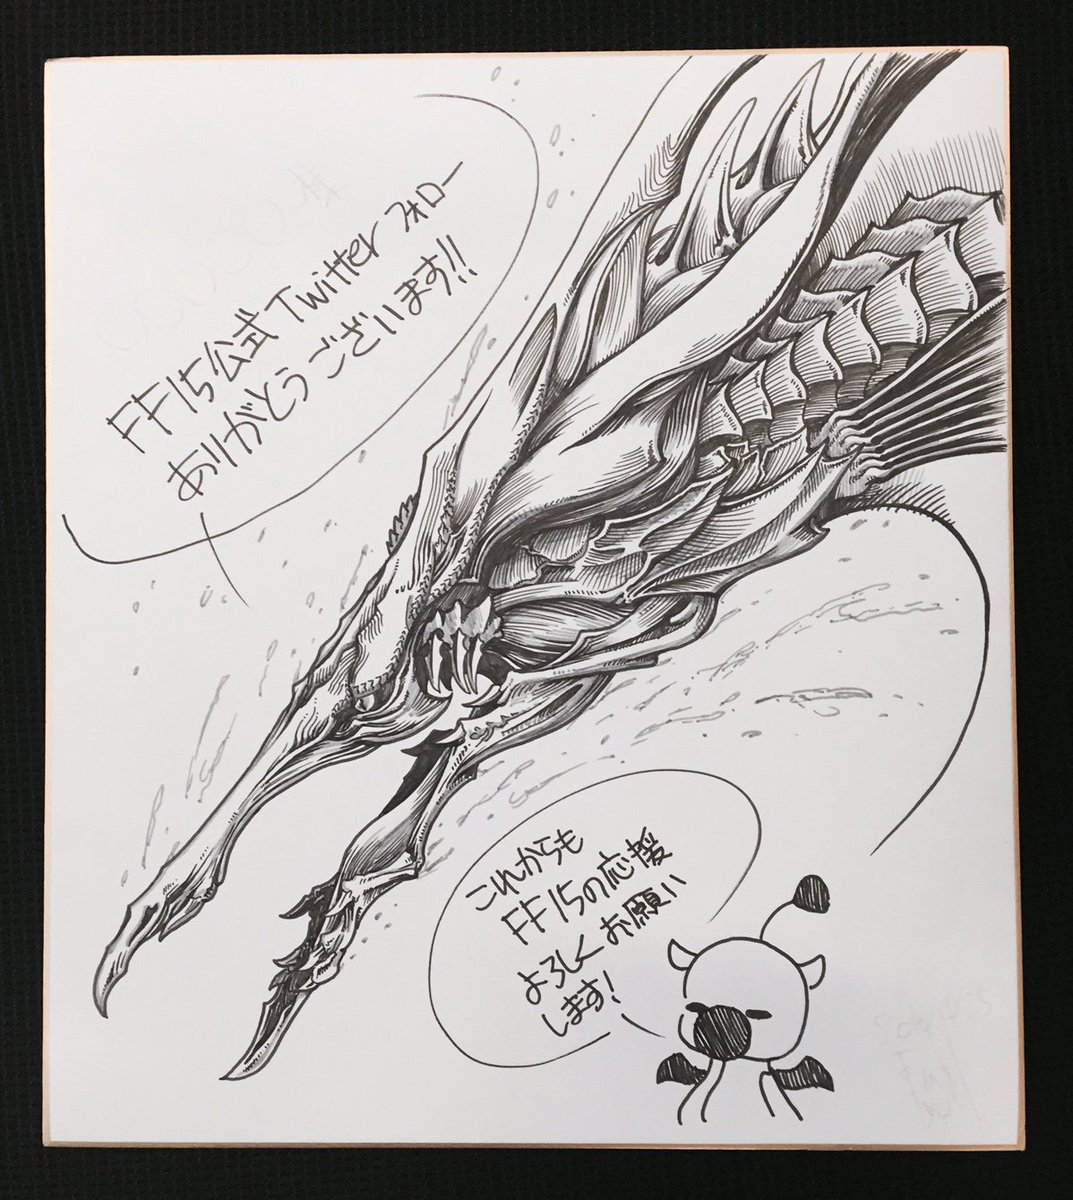 Final Fantasy Xv チョコボの飼育員大募集キャンペーン報酬の1つ Ffxv直筆イラストはコチラ 当選のご連絡は本日中にdmにてお送り予定です 乞うご期待っっ Ff15 Ffxv